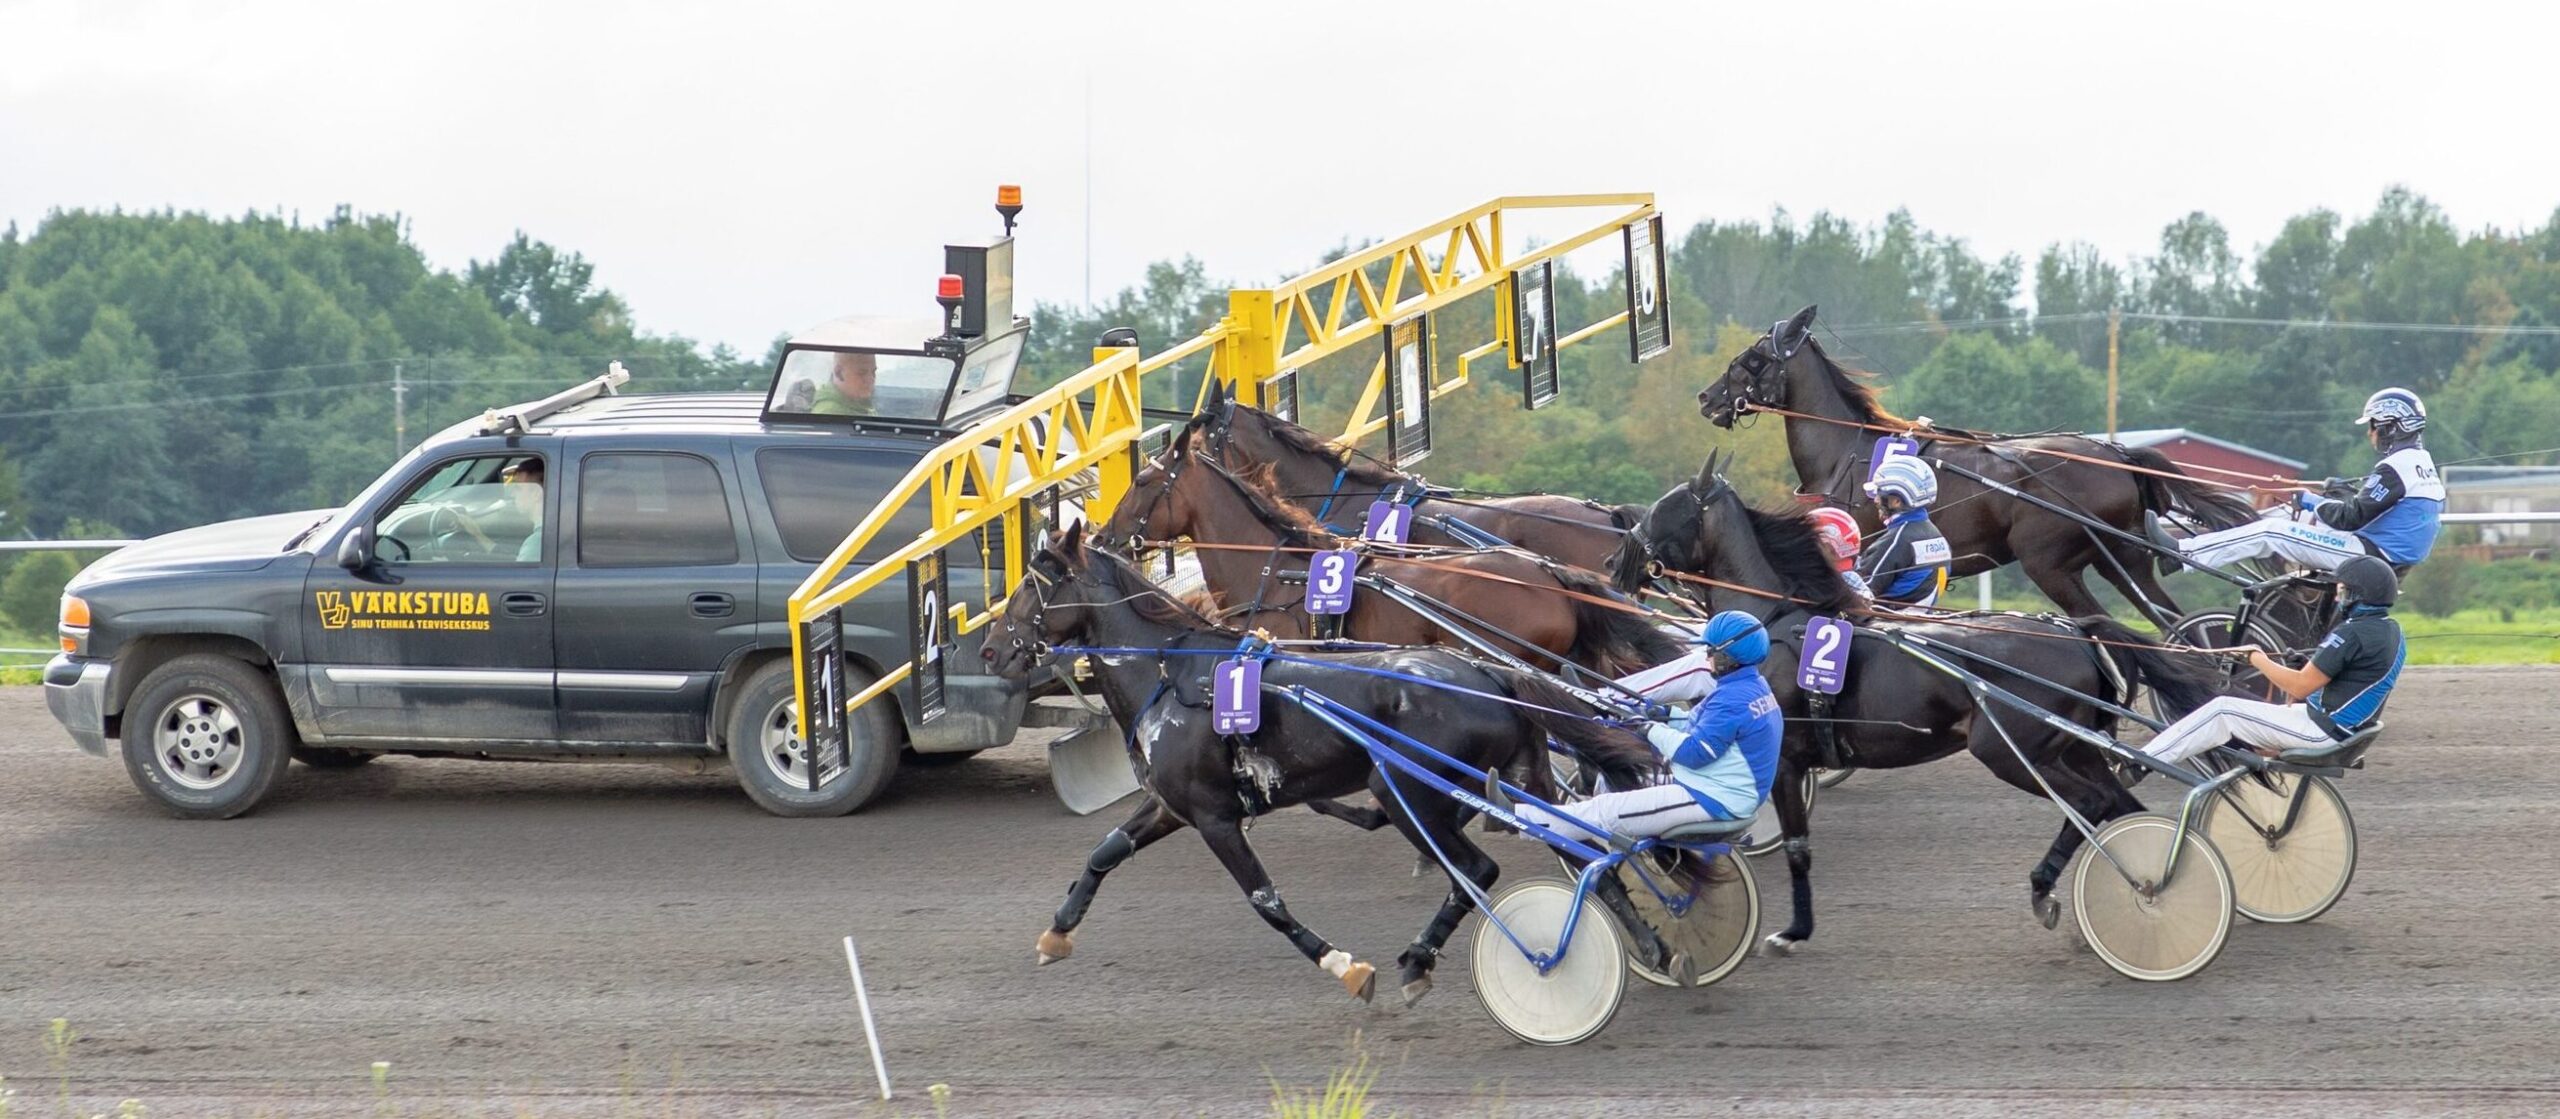 Traavivõistluste hooaeg on avatud ning 18. mail saab Tuula külas meie sportlastele kaasa elada. Seekord on üles antud 30 hobust Eestist, Lätist, Leedust ja Root